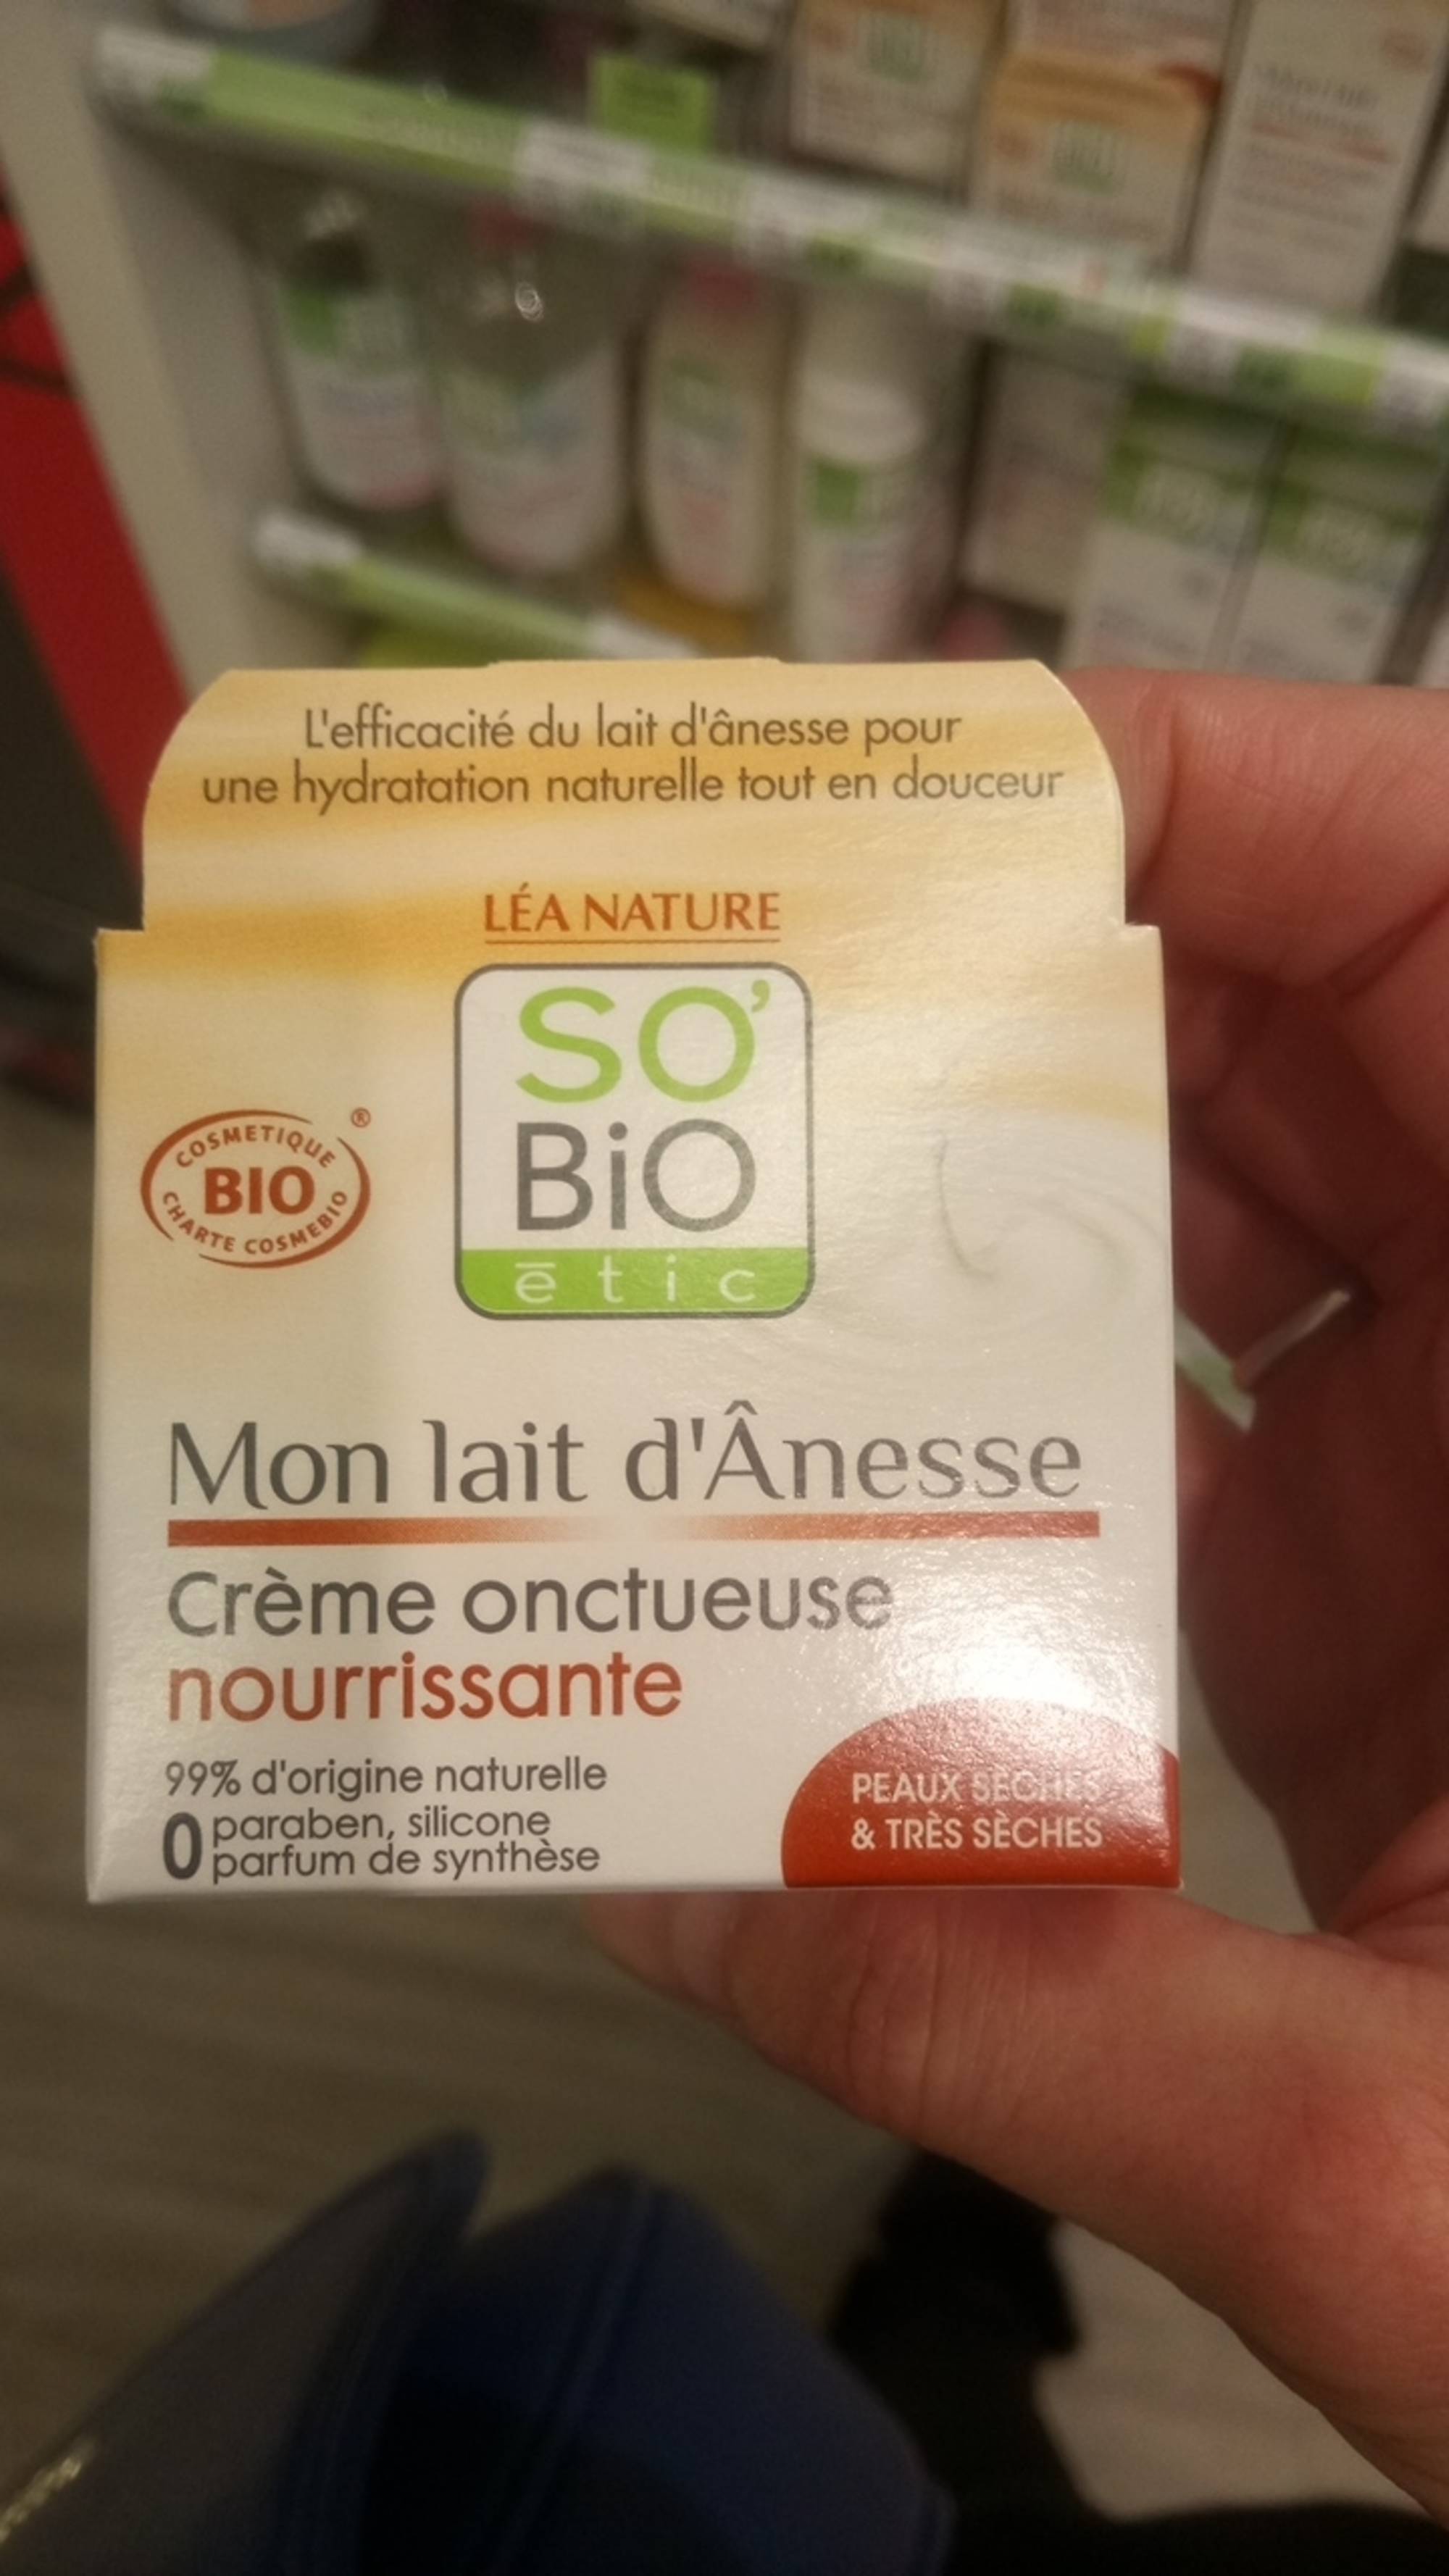 SO'BIO ÉTIC - Mon lait d'ânesse - Crème onctueuse nourrissante bio